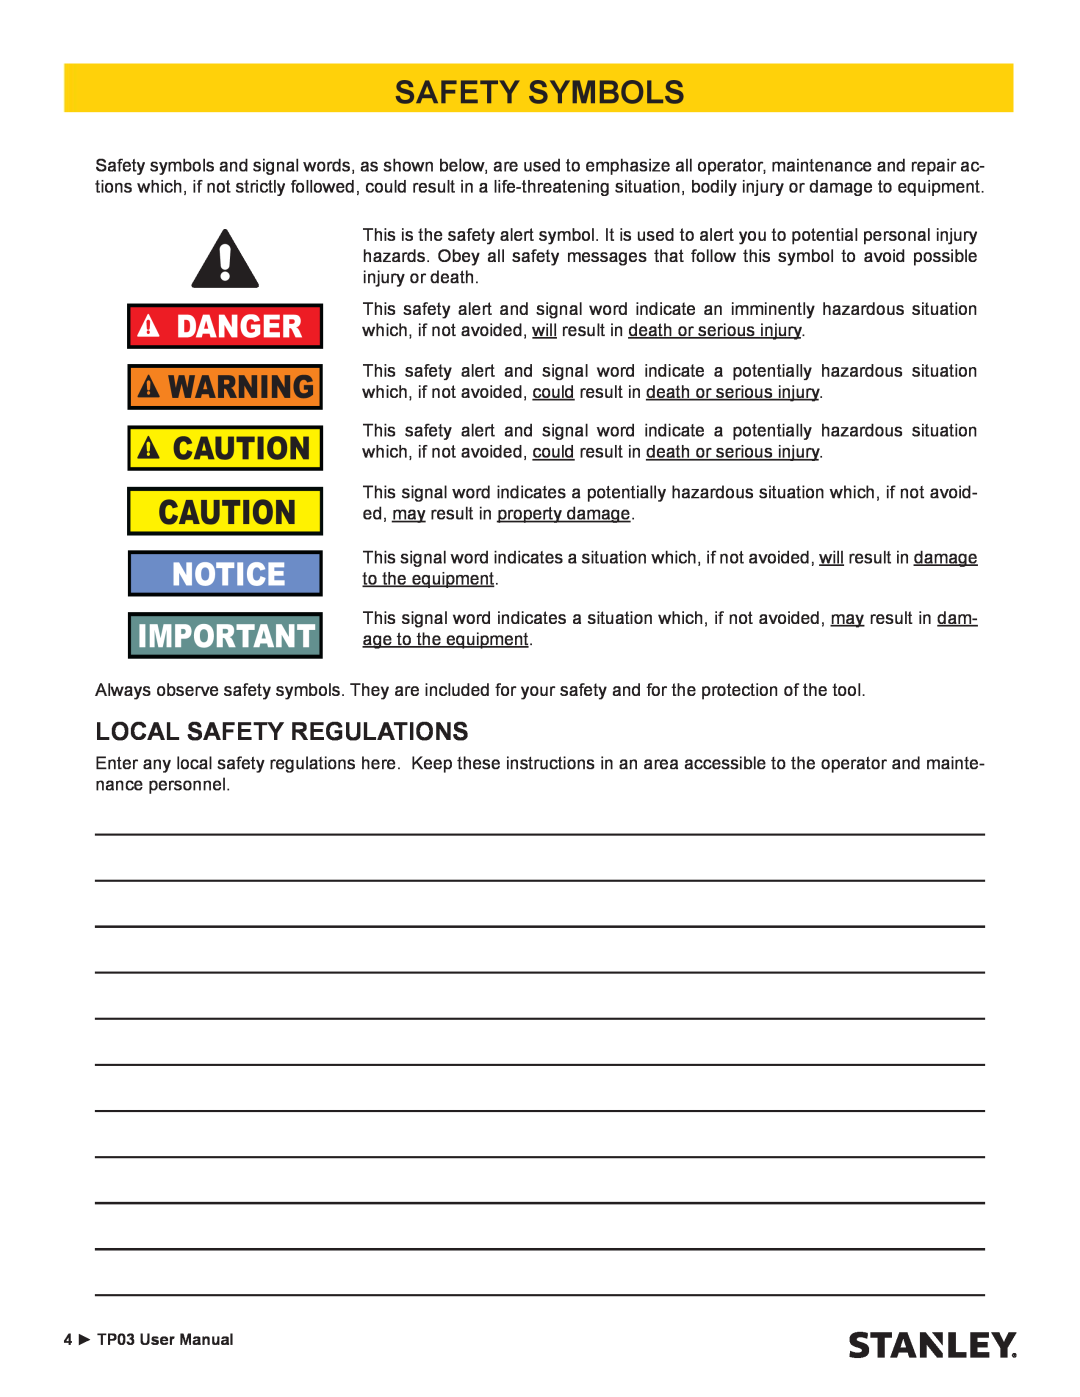 Stanley Black & Decker TP03 user manual Safety Symbols, Local Safety Regulations, Danger 